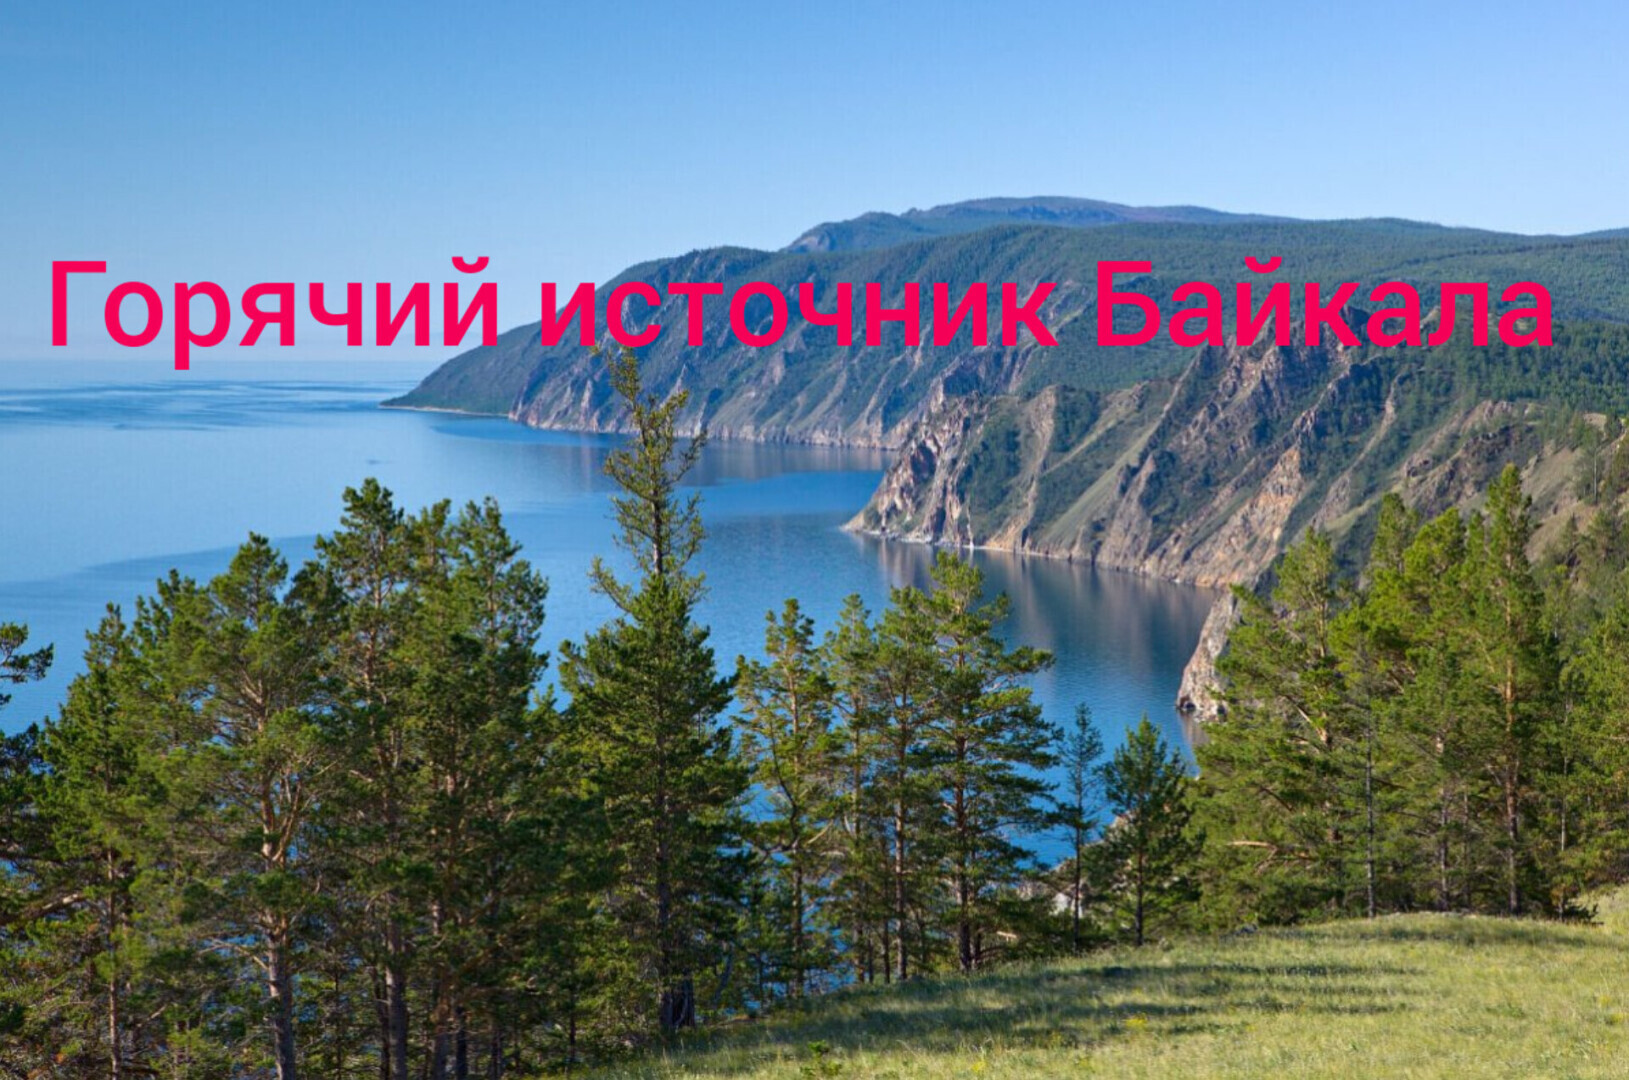 Байкал самое глубокое озеро